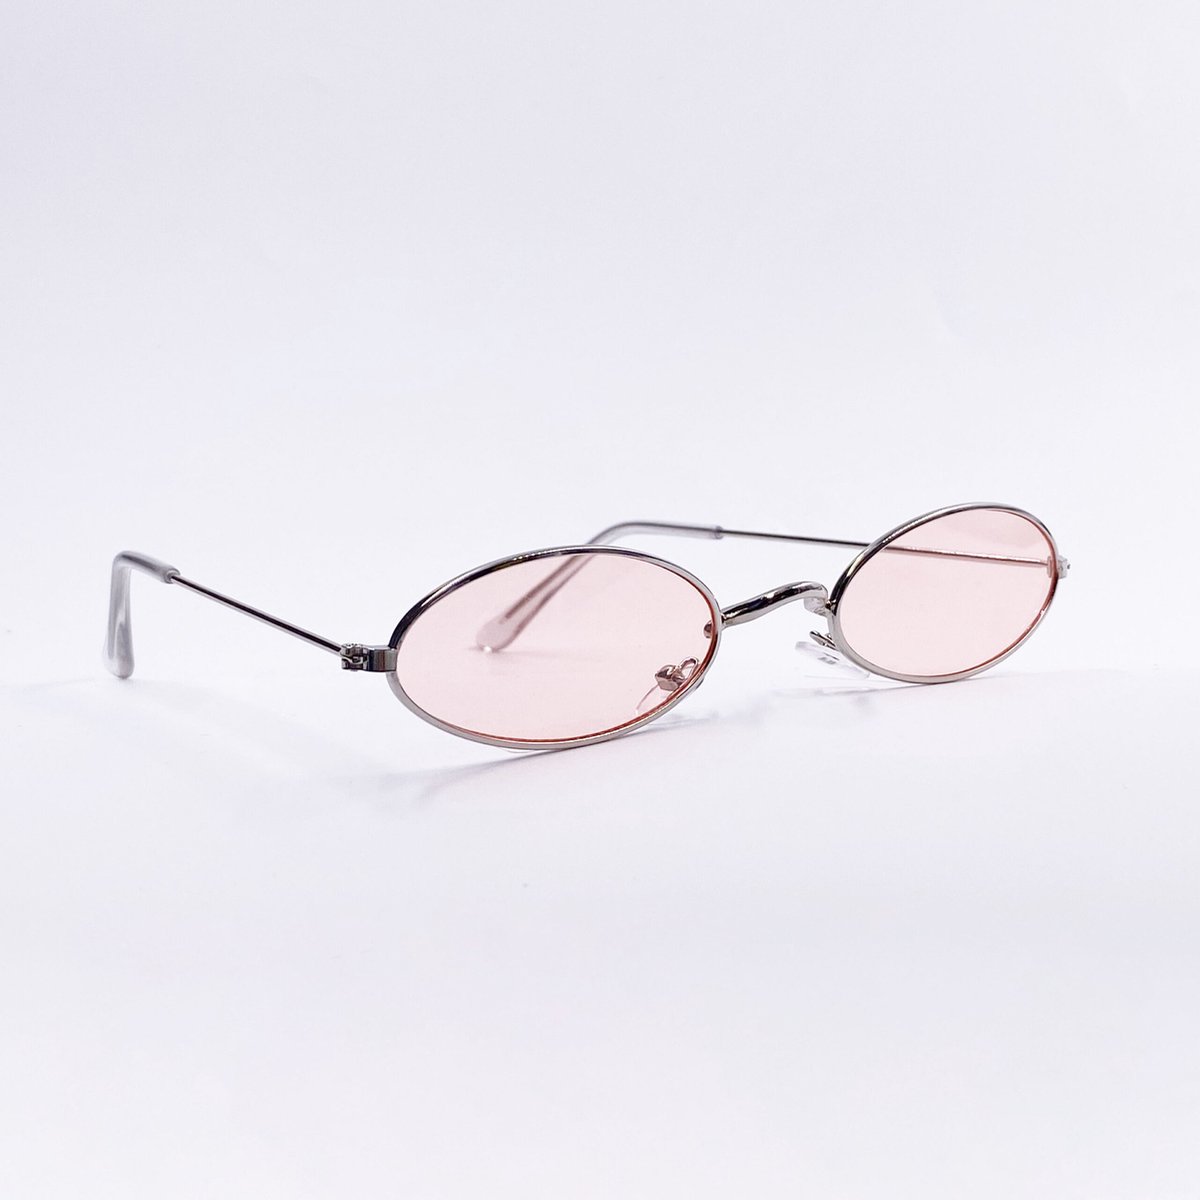 Vintage Glasses - festivalbril - zonnebril - feestbril - festival spacebril - festivalzonnebril | Roze | PartyGlasses